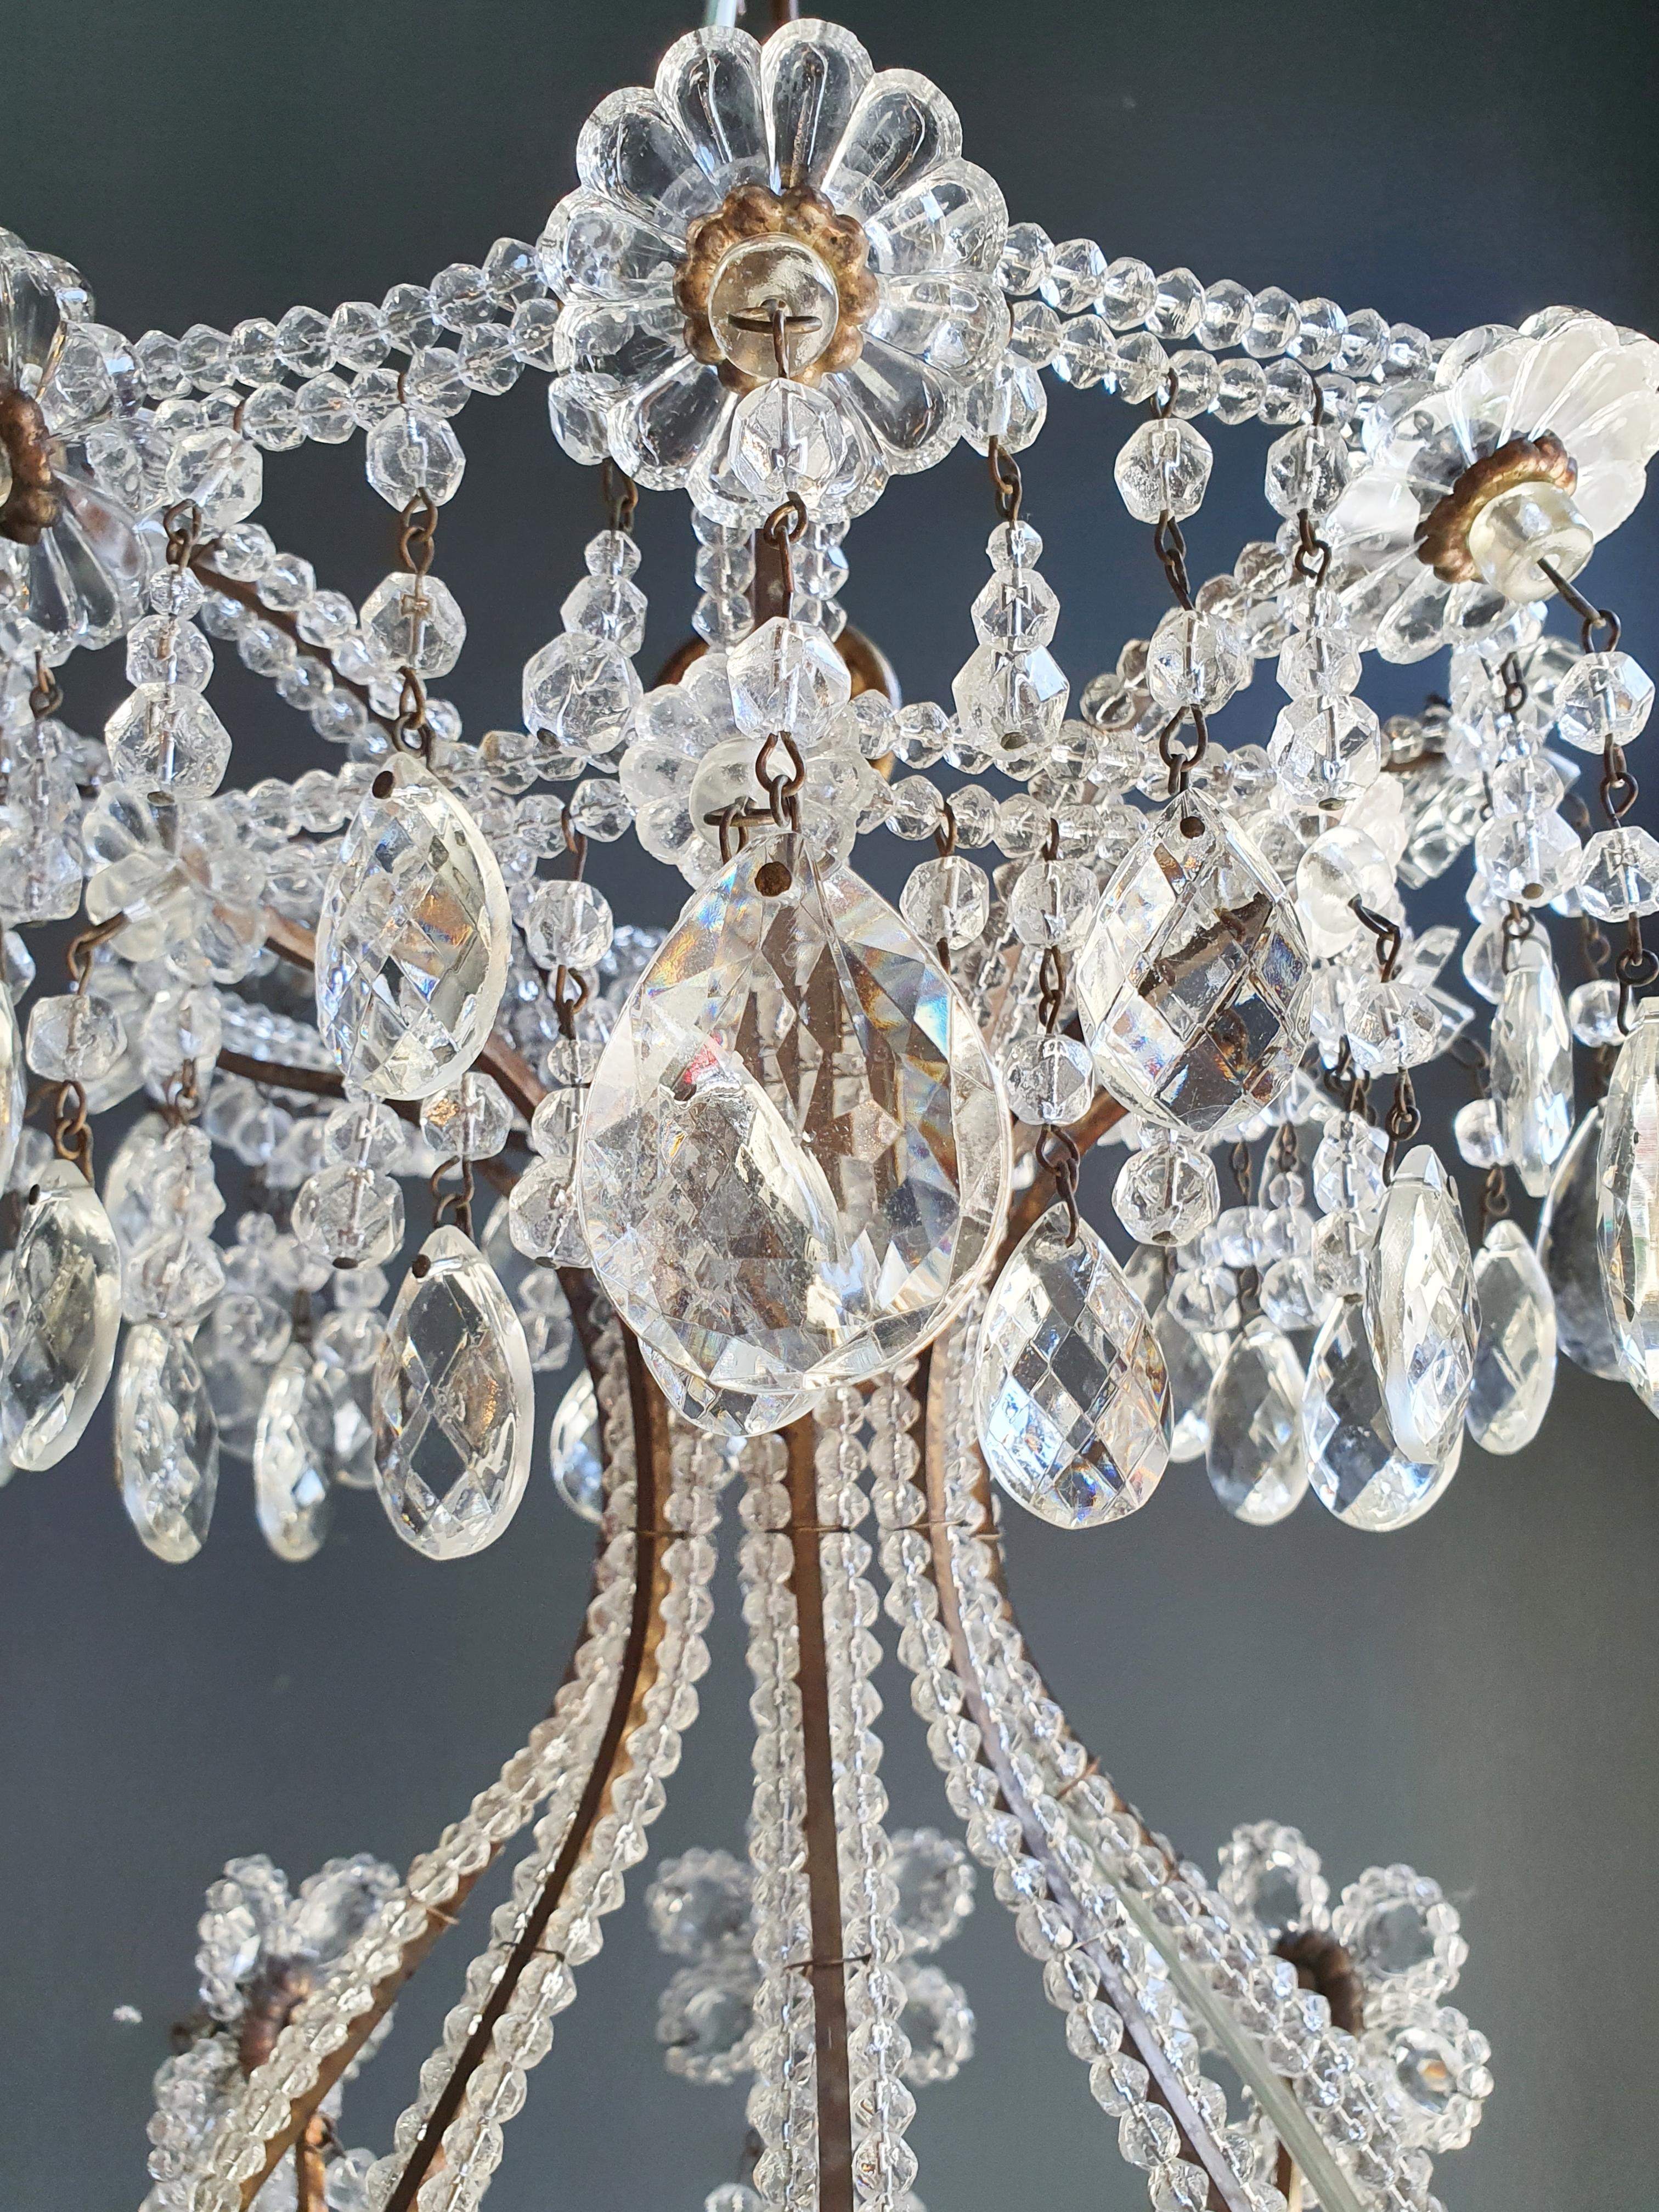 European Brass Crystal Chandelier Antique Ceiling Lamp Lustre Art Nouveau Lamp